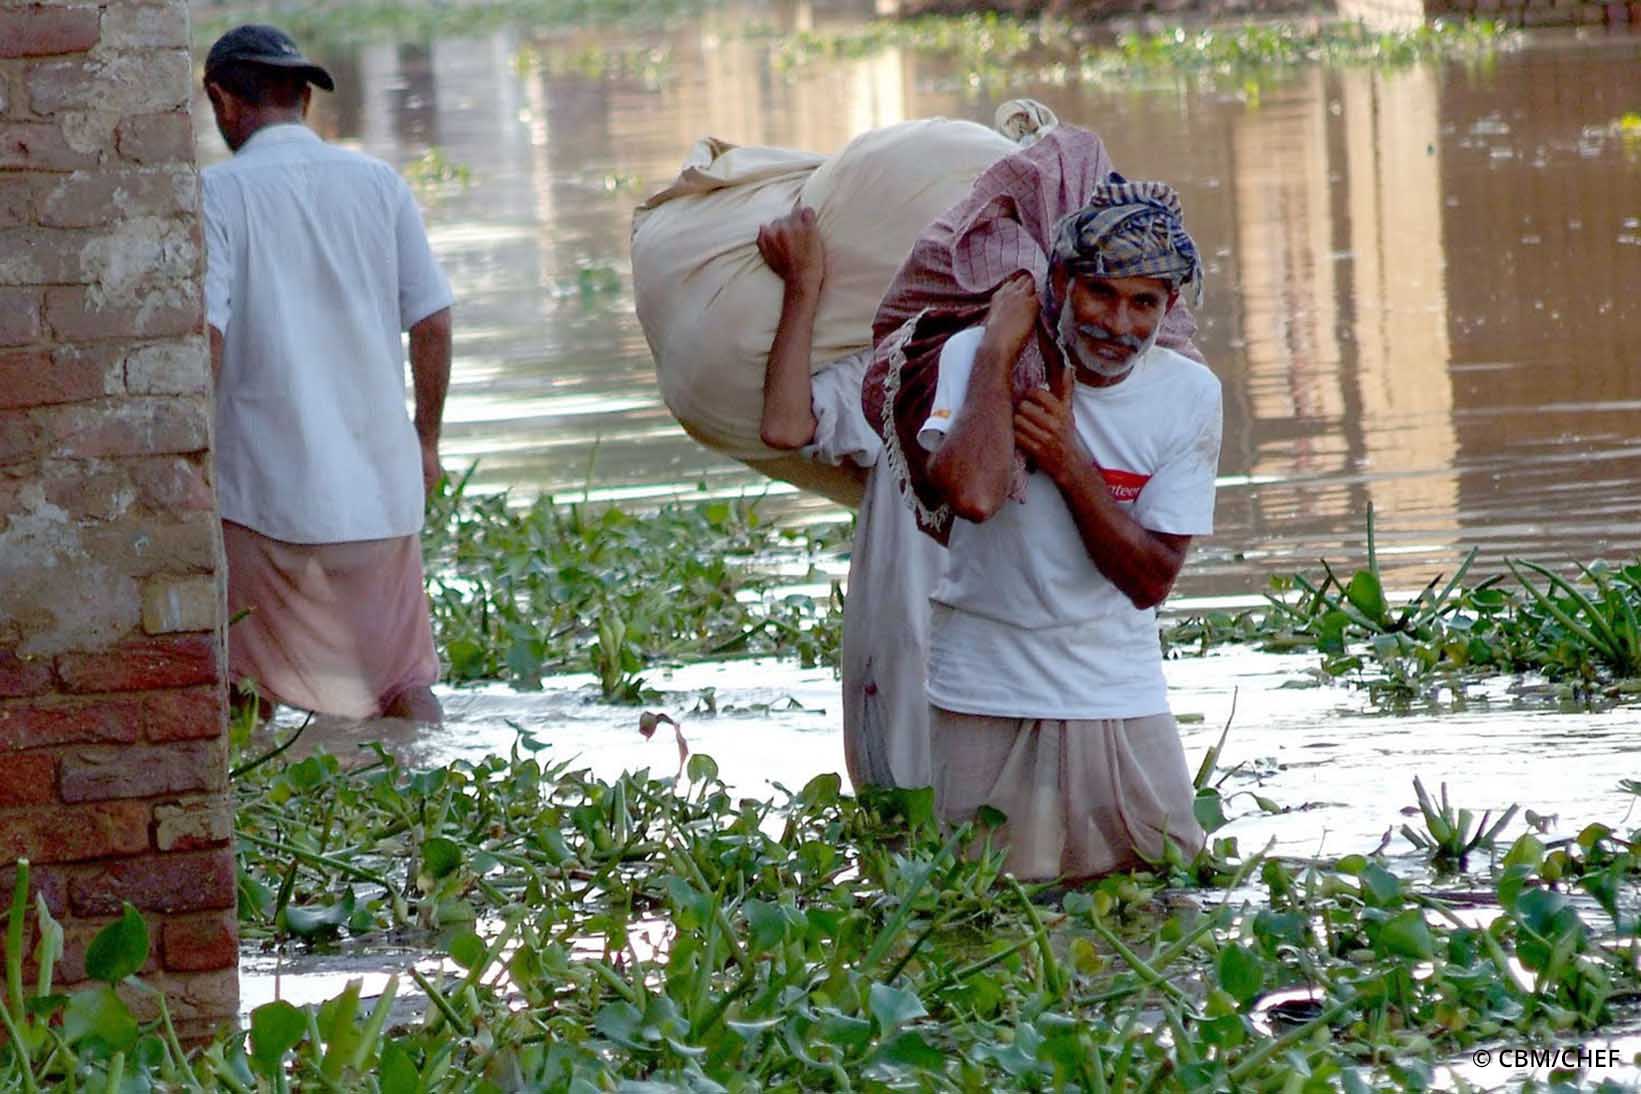 Drei Personen aus Pakistan gehen nach einer Überschwemmung im knietiefen Wasser und tragen Säcke über ihren Schultern.